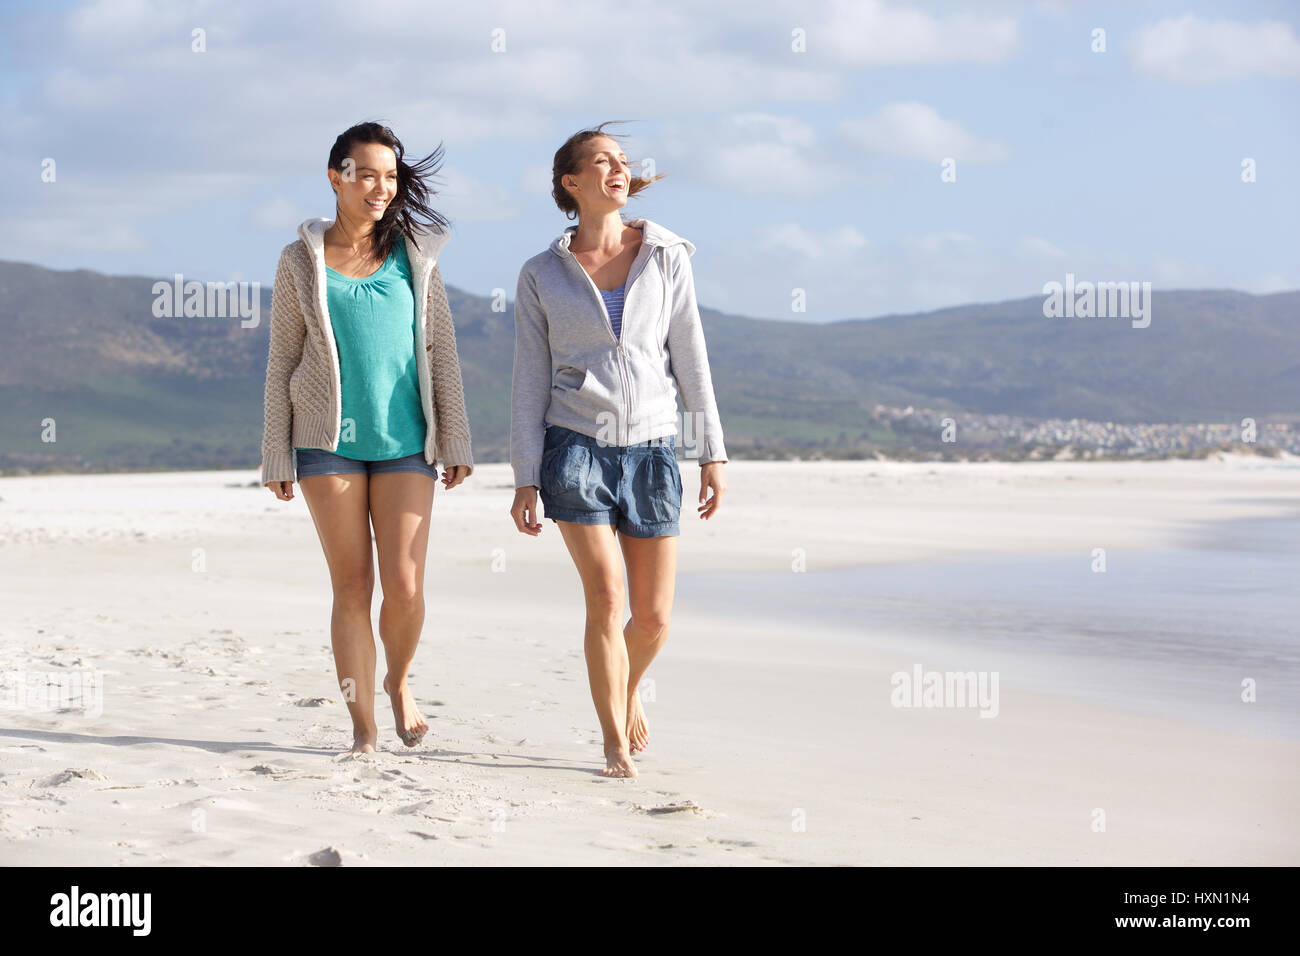 Portrait of two smiling women friends walking on beach ensemble Banque D'Images